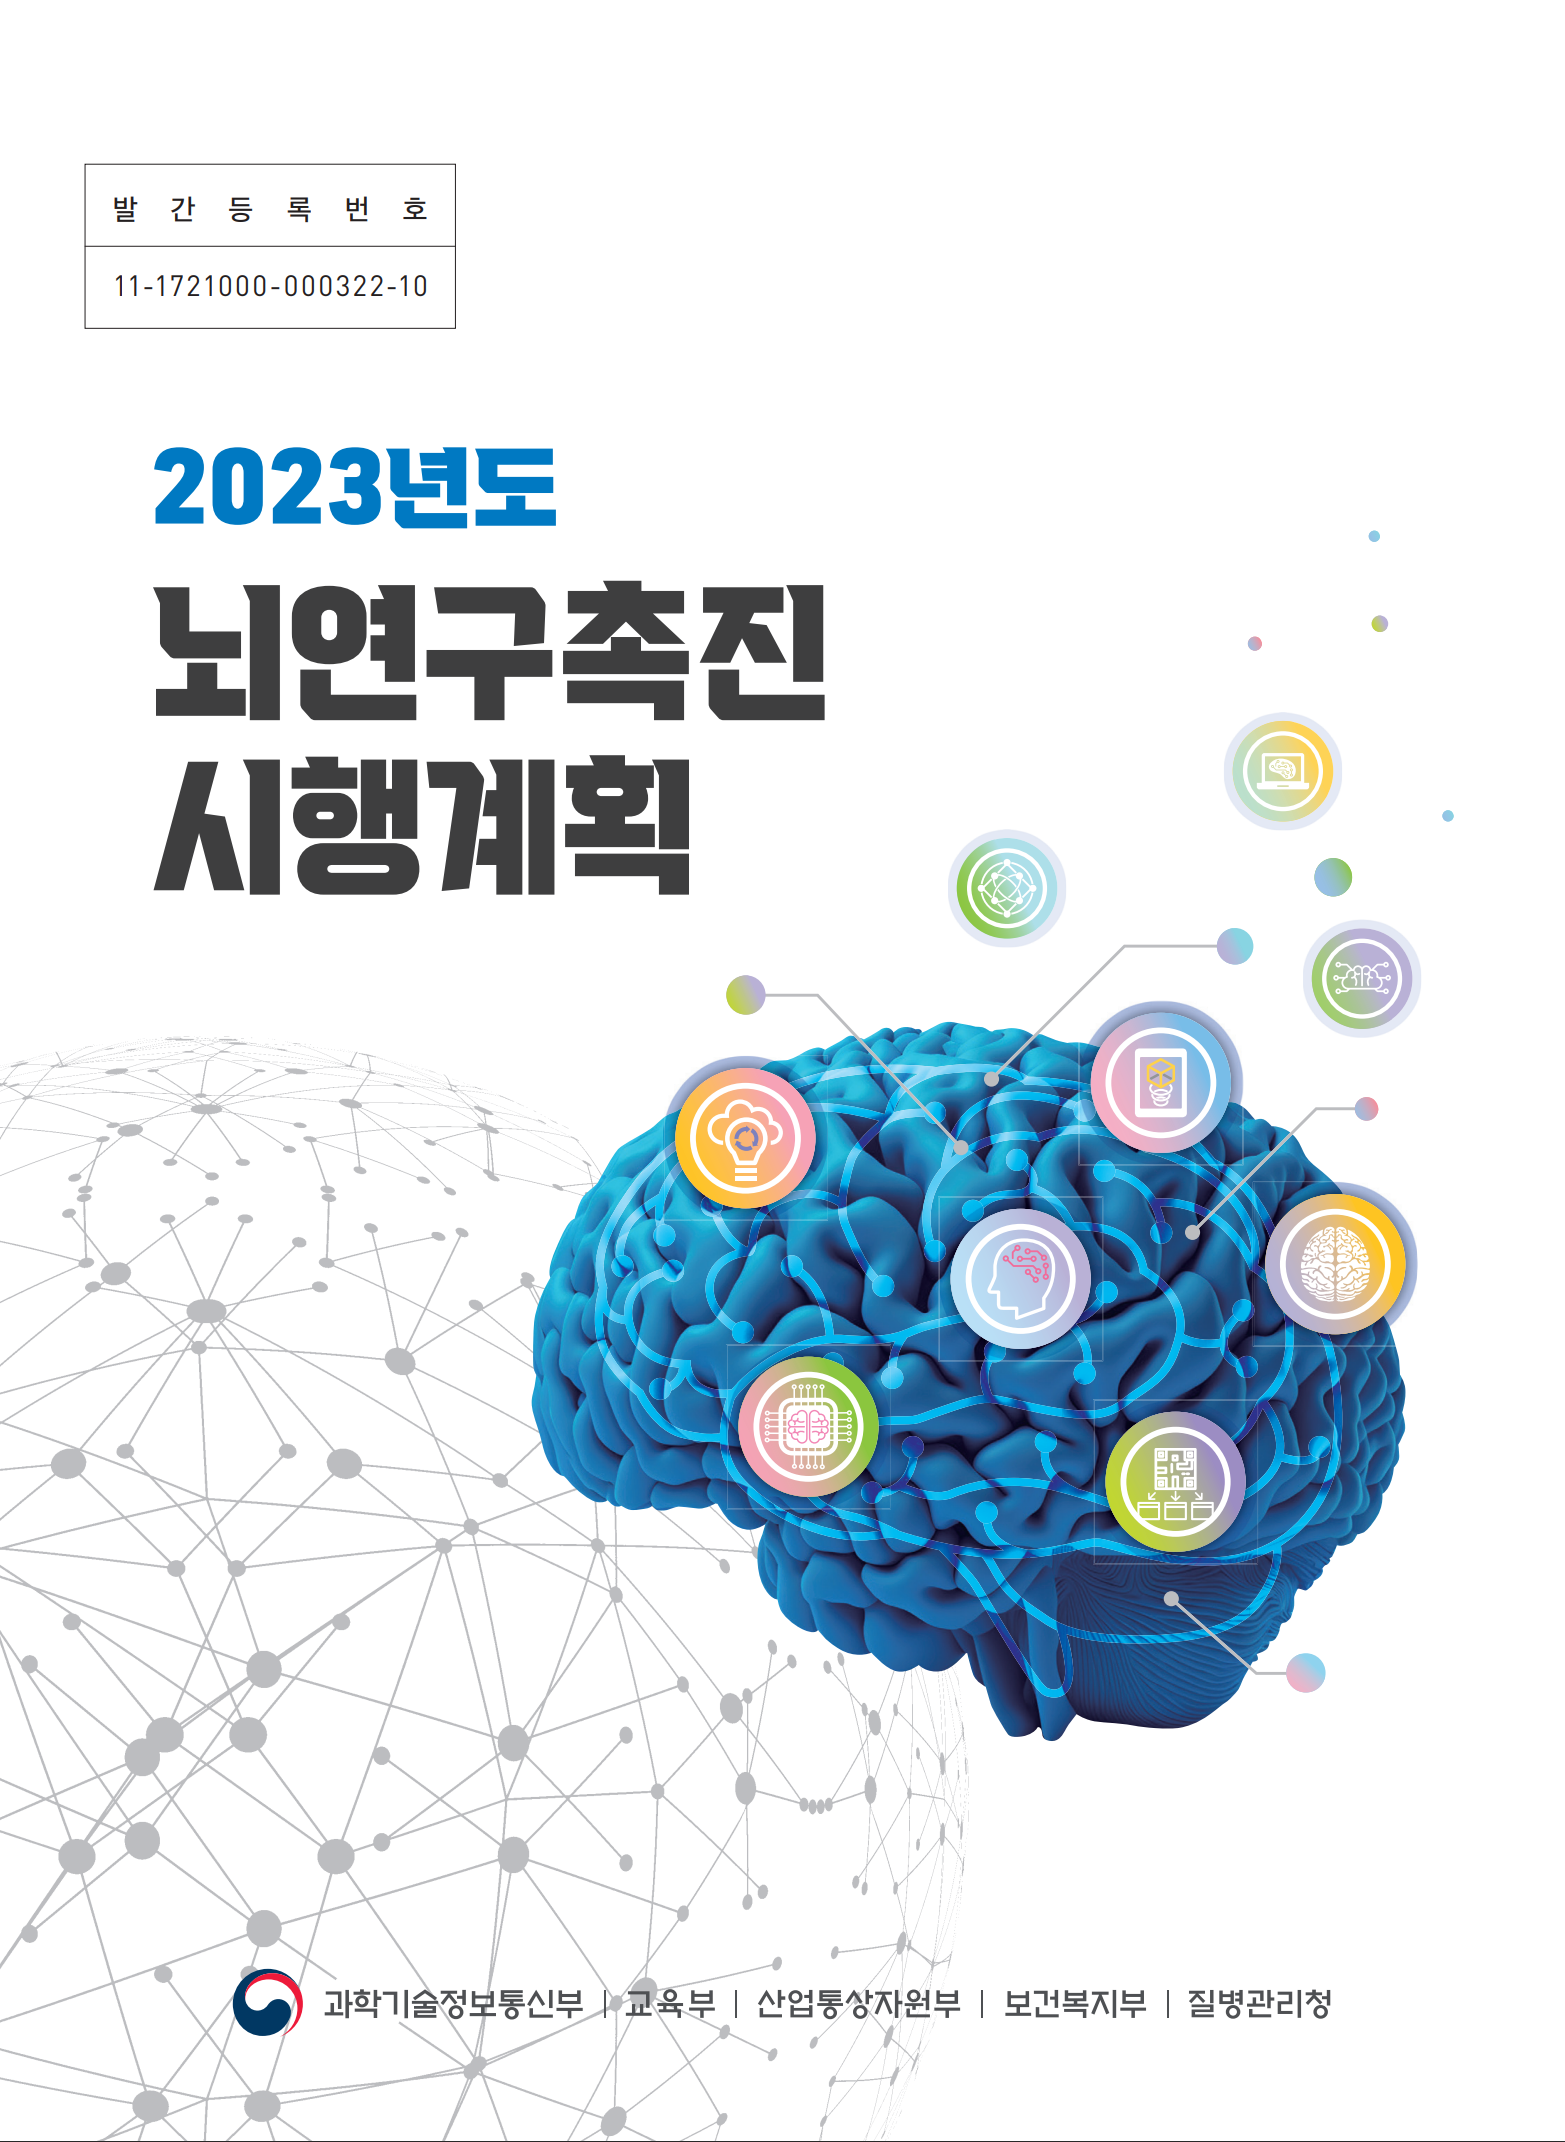 2023년도 뇌연구촉진 시행계획